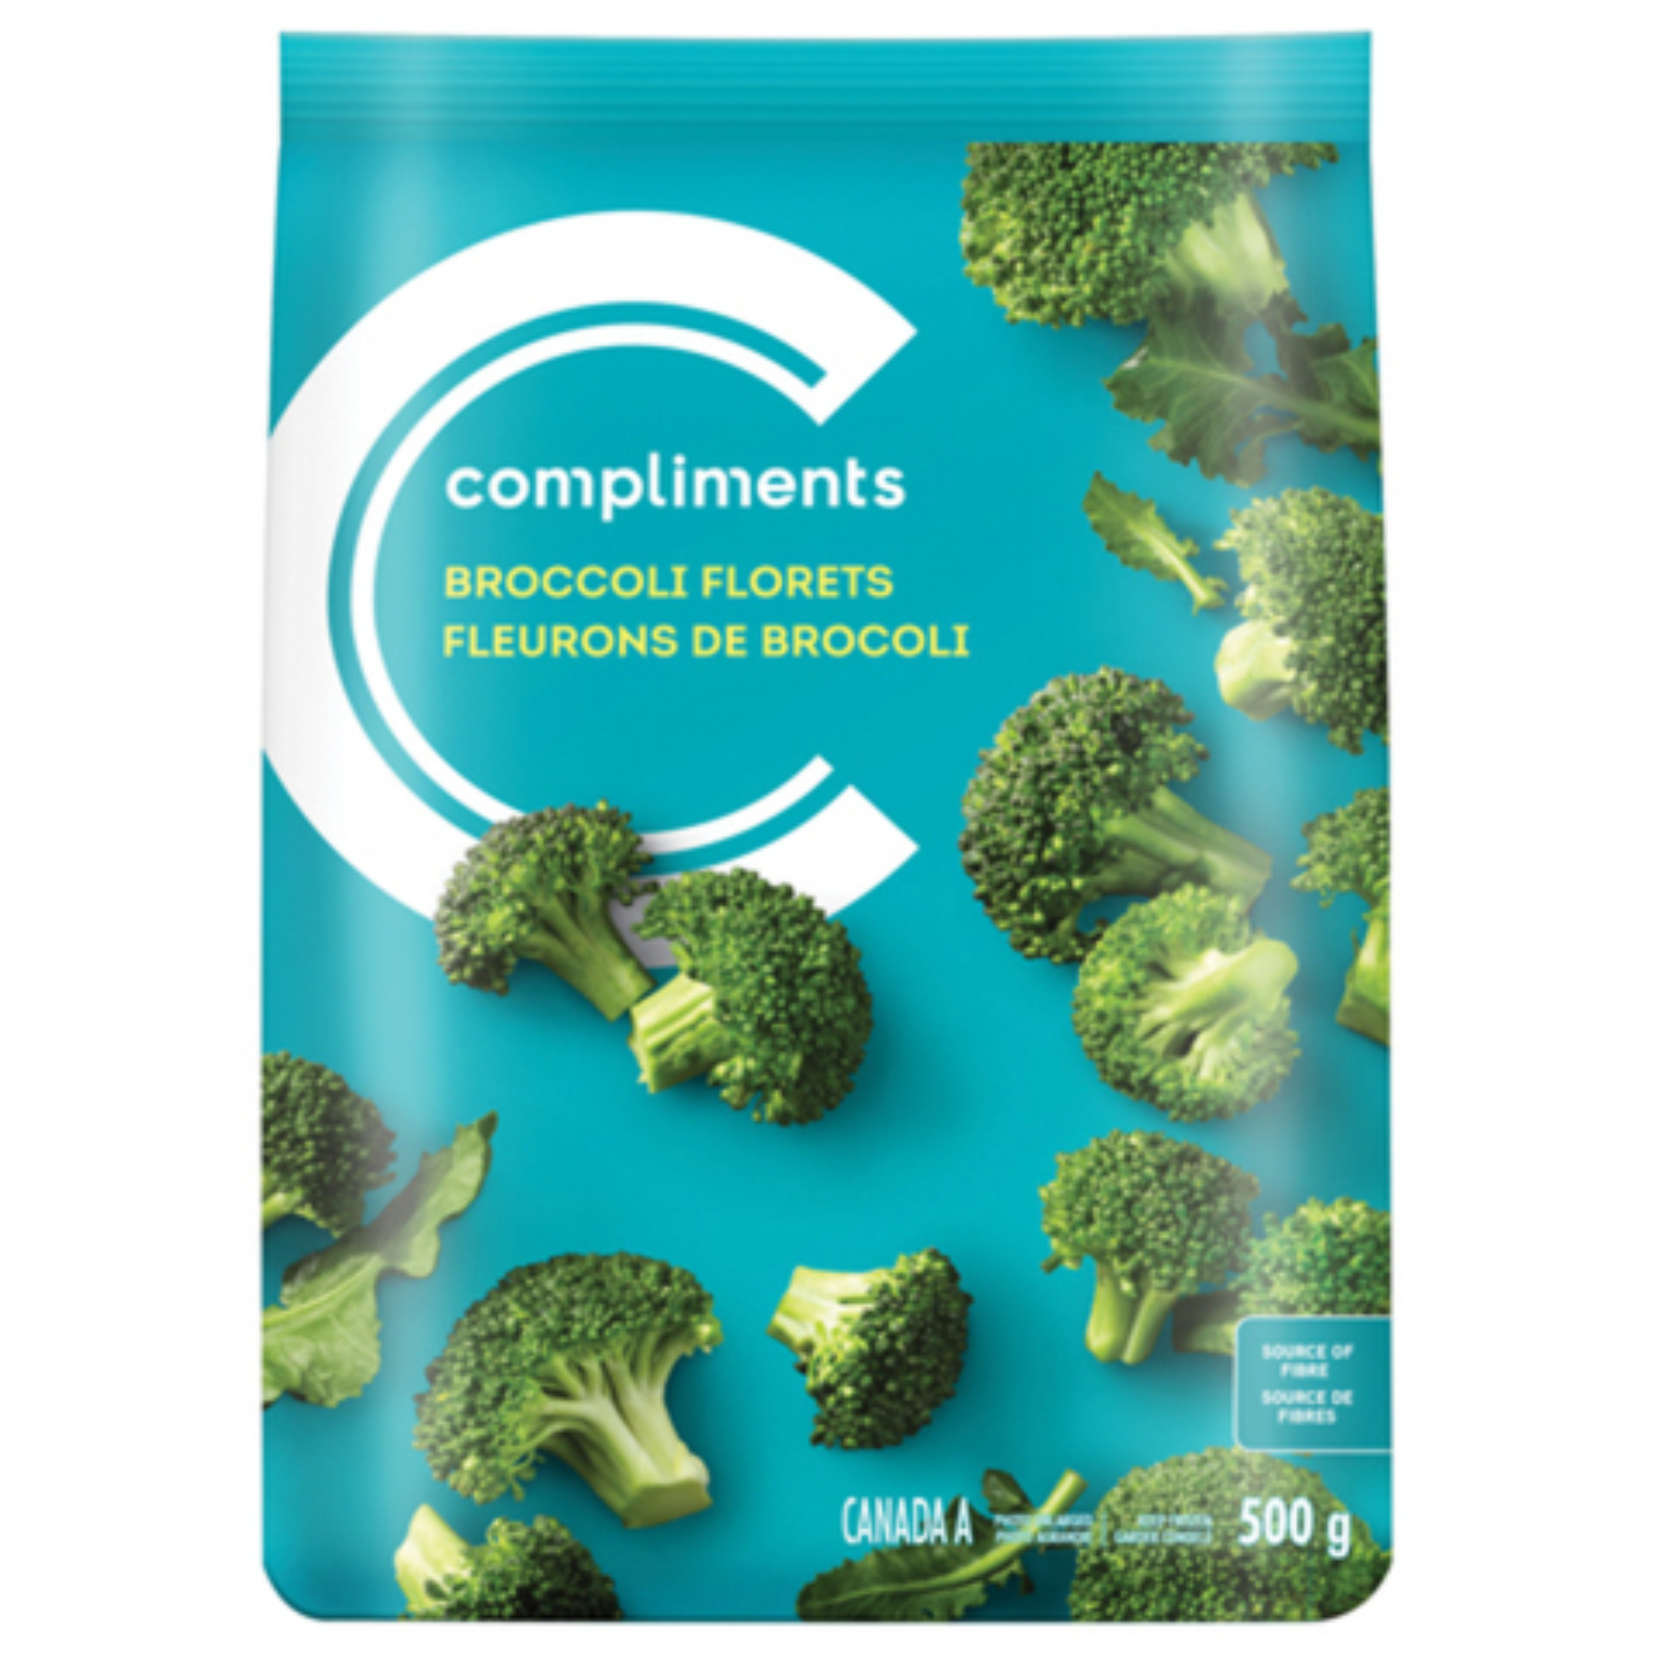 Compliments Frozen Broccoli Florets 500g